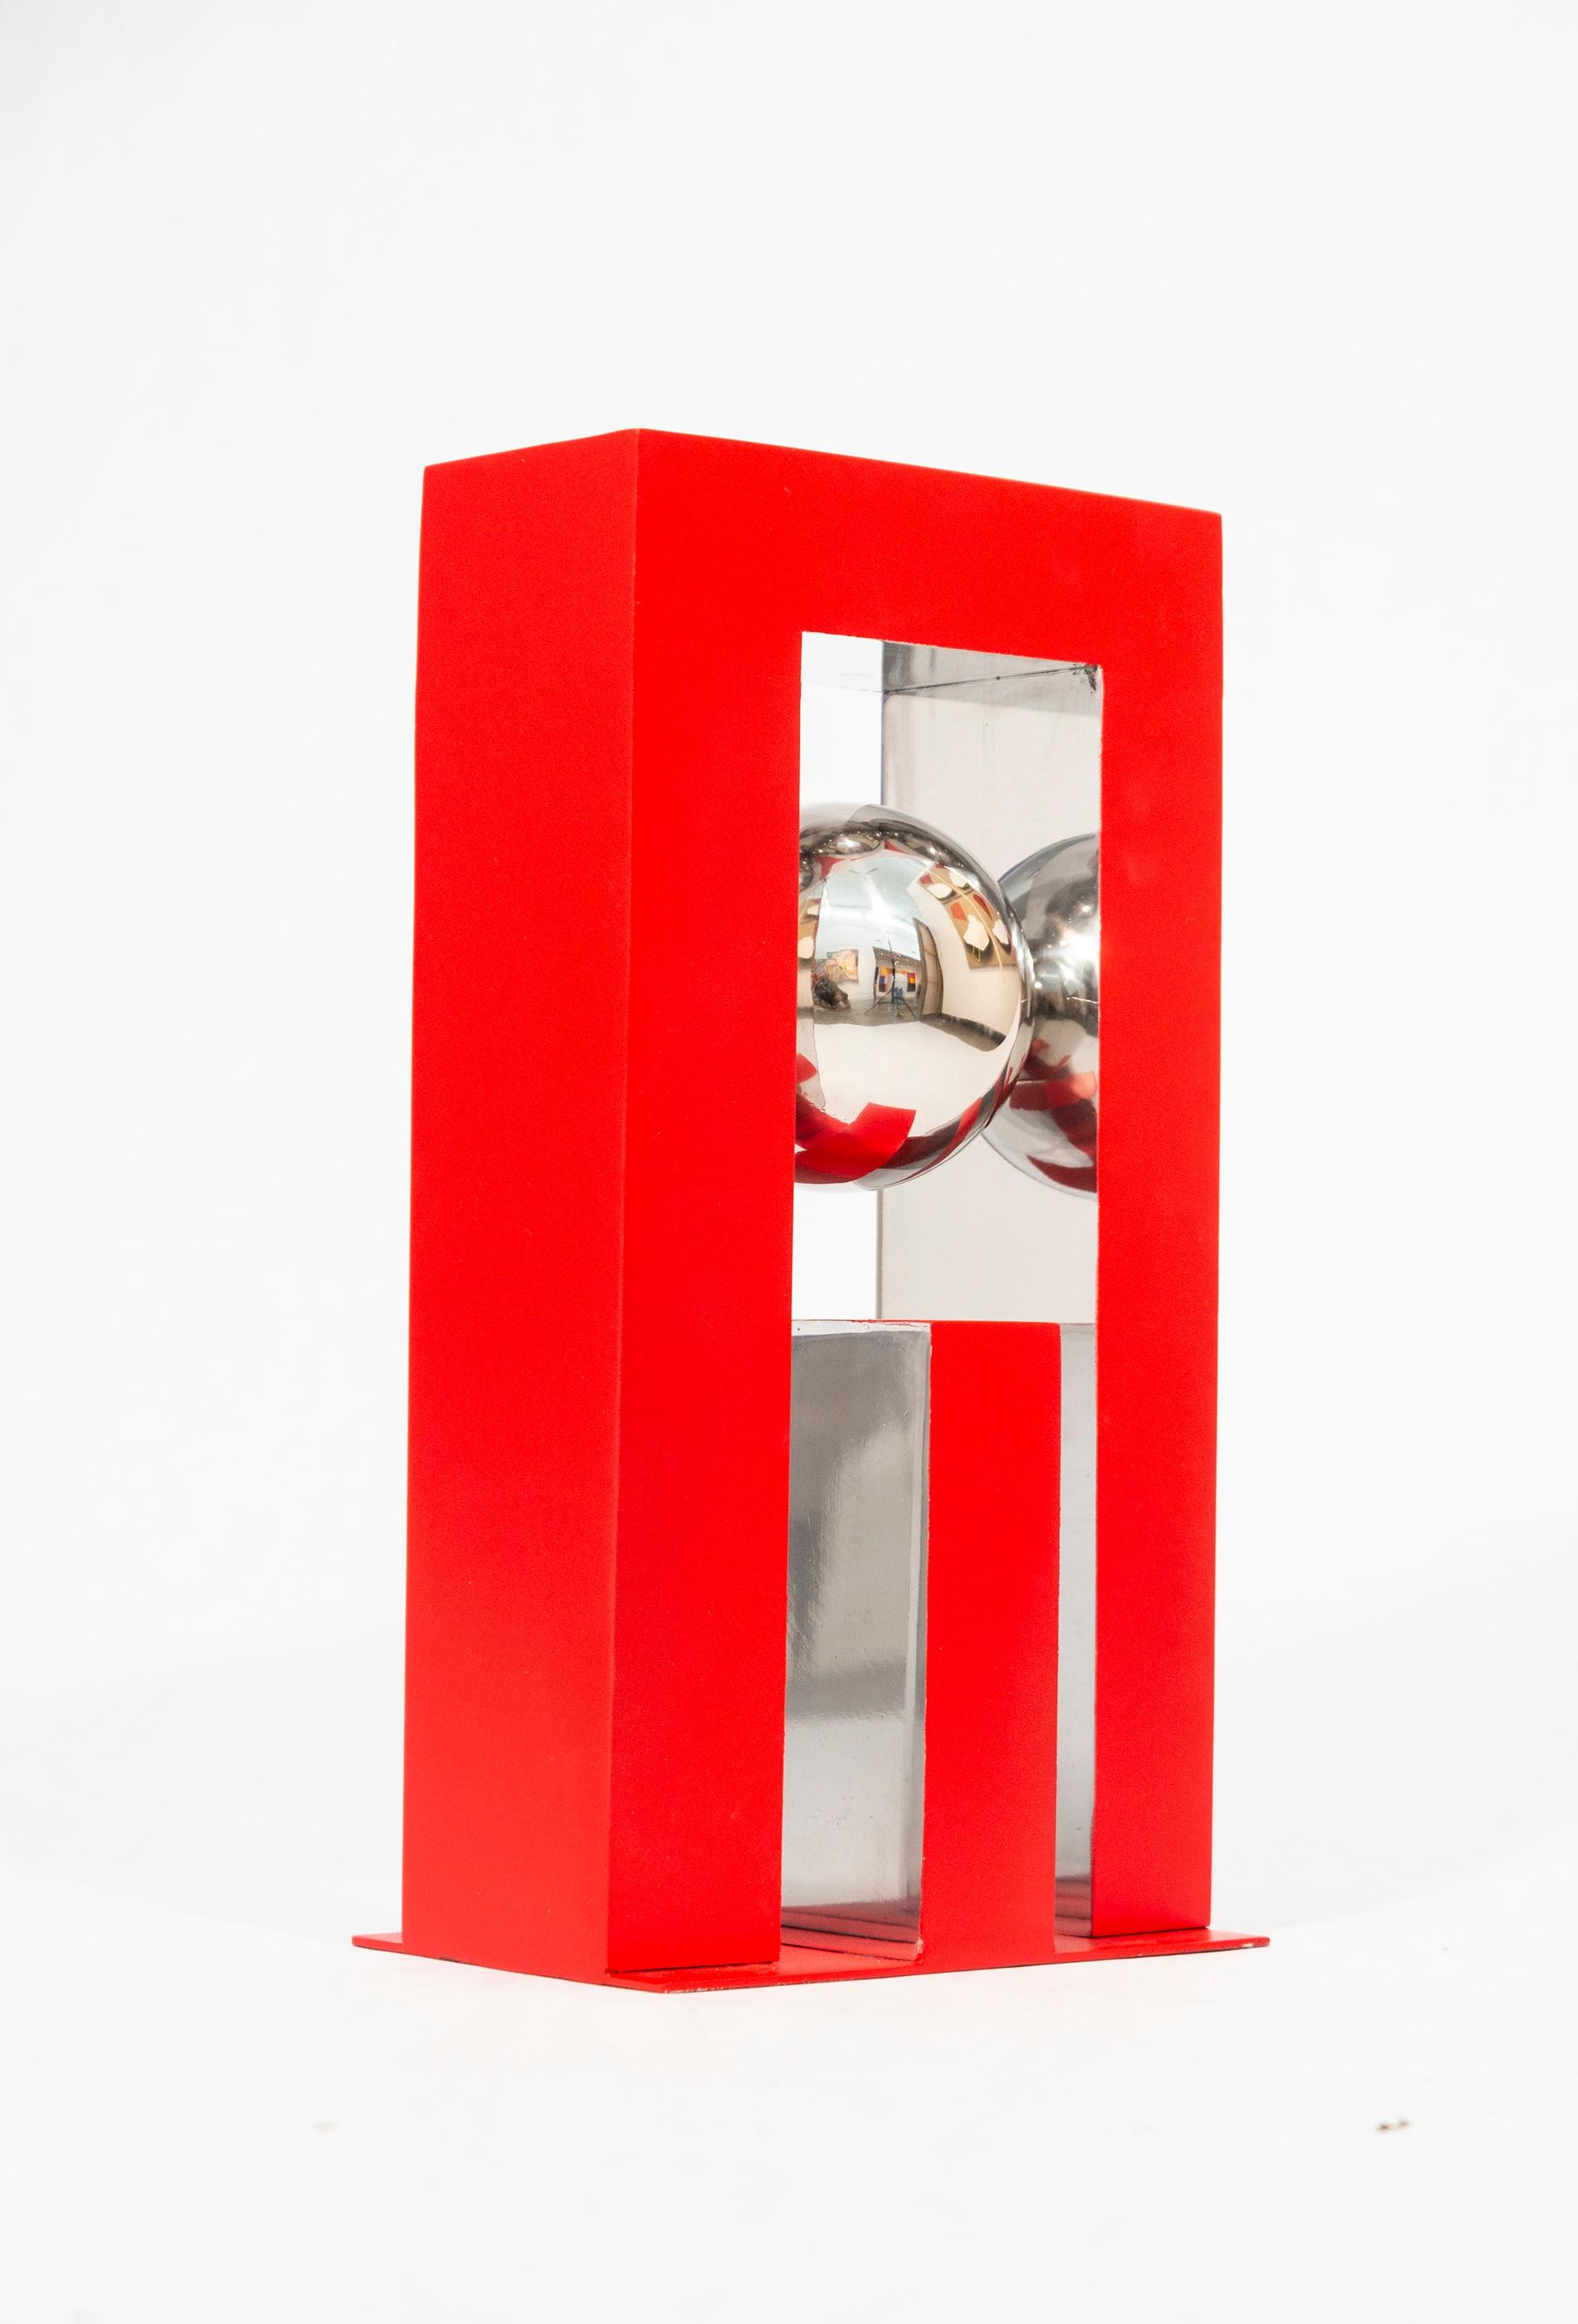 Mécanique céleste - sculpture moderne, géométrique, abstraite en aluminium peint - Sculpture de Philippe Pallafray